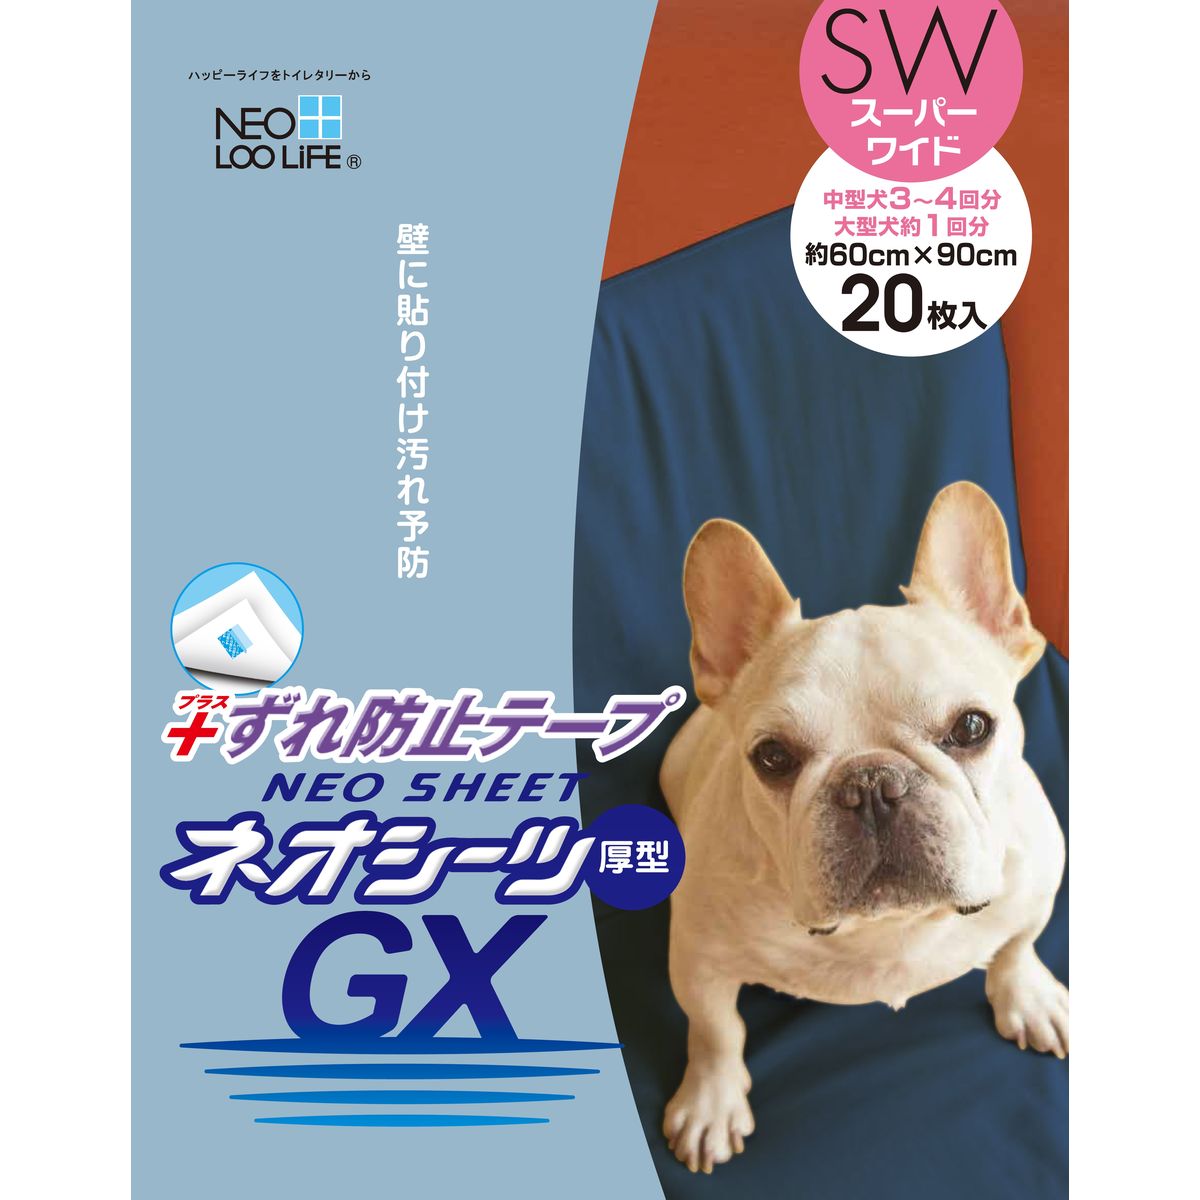 ネオシーツズレ防止GX スーパーワイド20枚×6